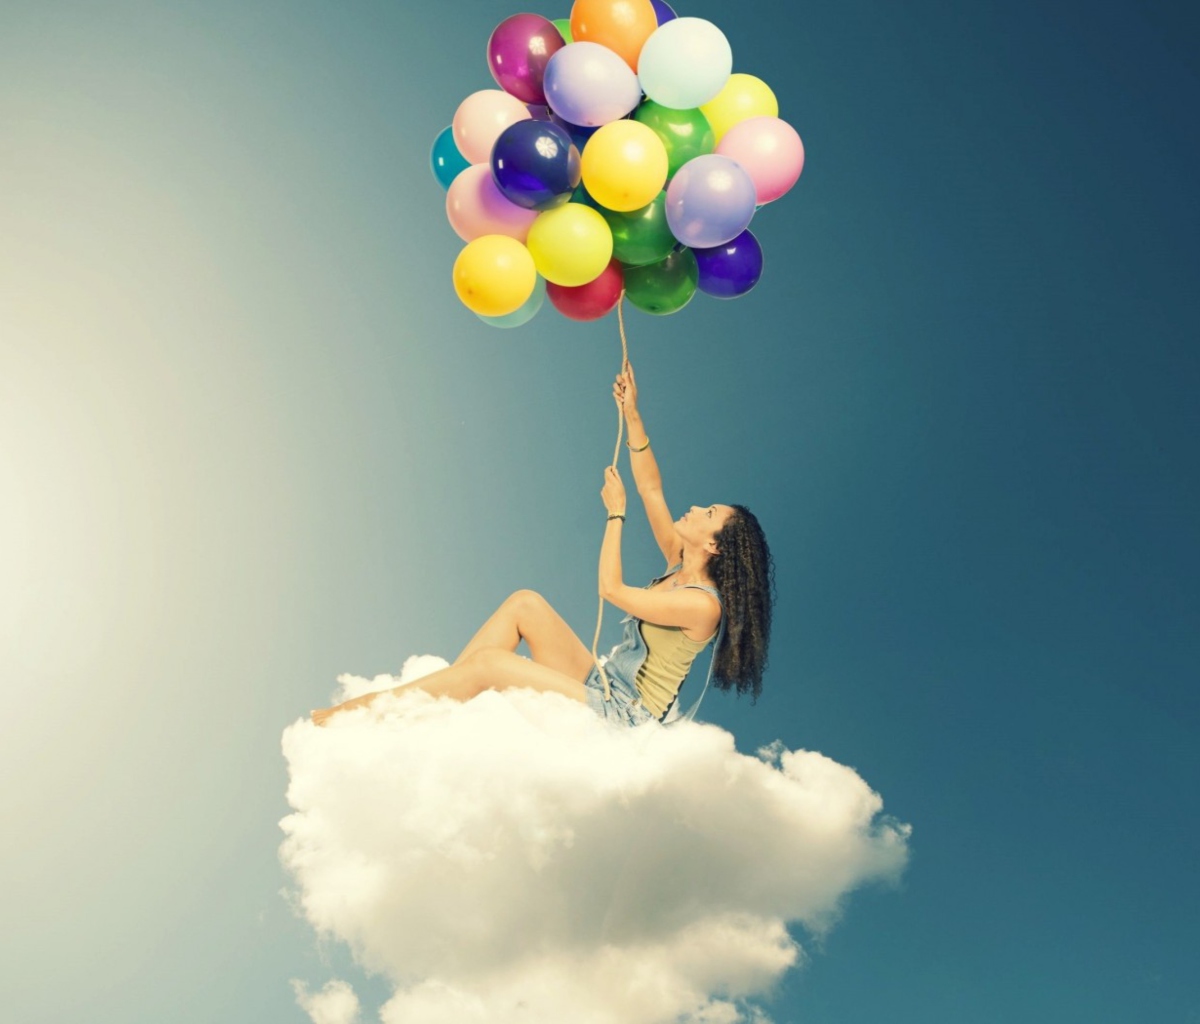 Обои Flyin High On Cloud With Balloons 1200x1024